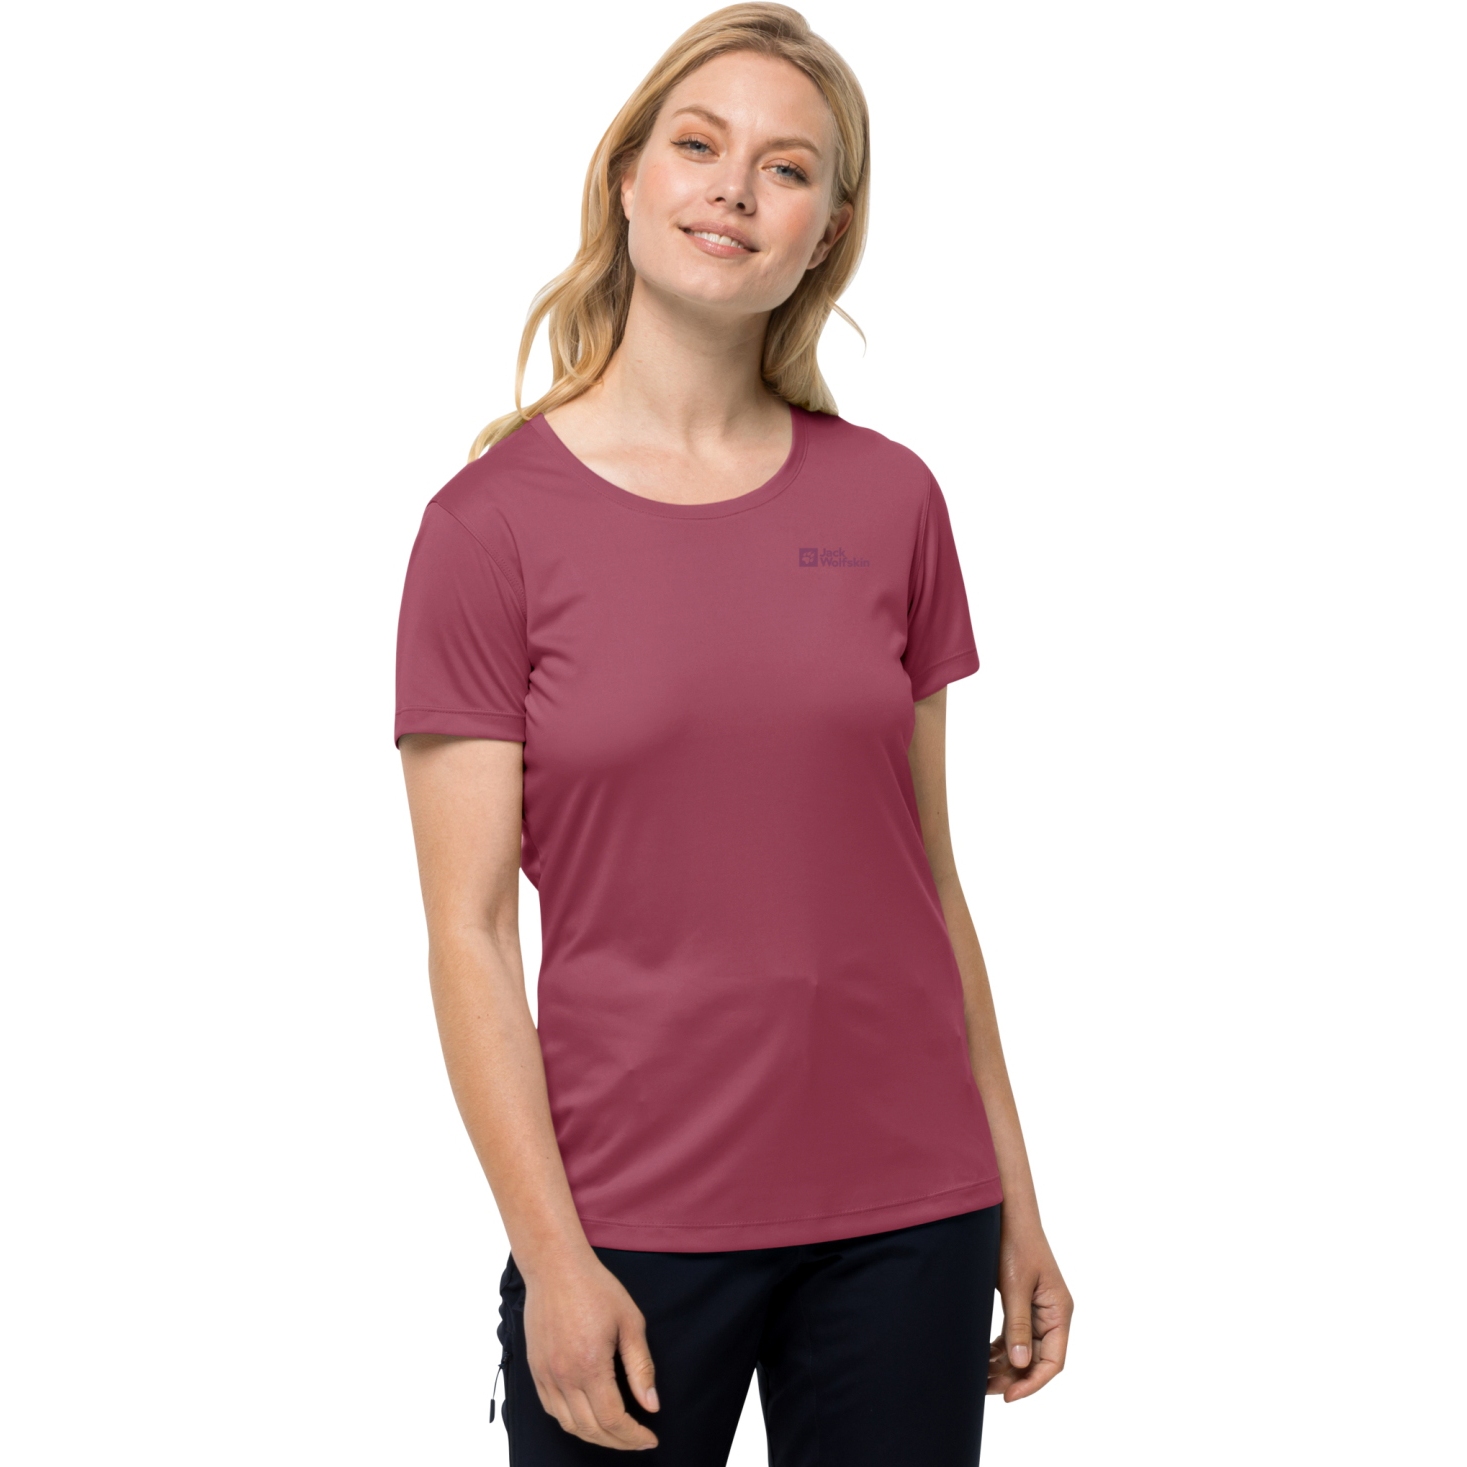 Produktbild von Jack Wolfskin Tech Damen T-Shirt - sangria red